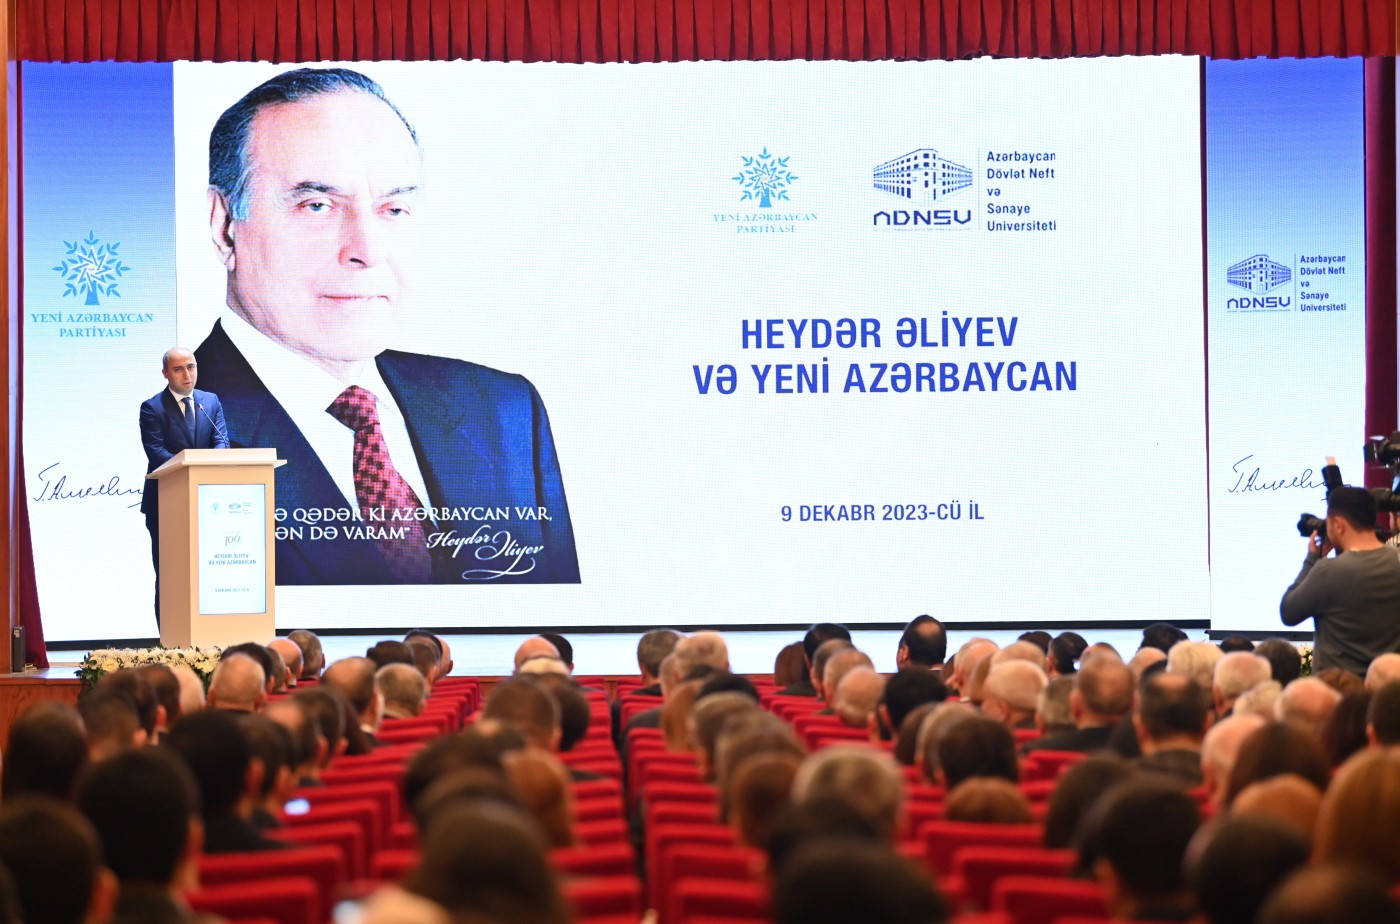 “Heydər Əliyev və Yeni Azərbaycan” mövzusunda konfrans keçirildi - FOTOLAR